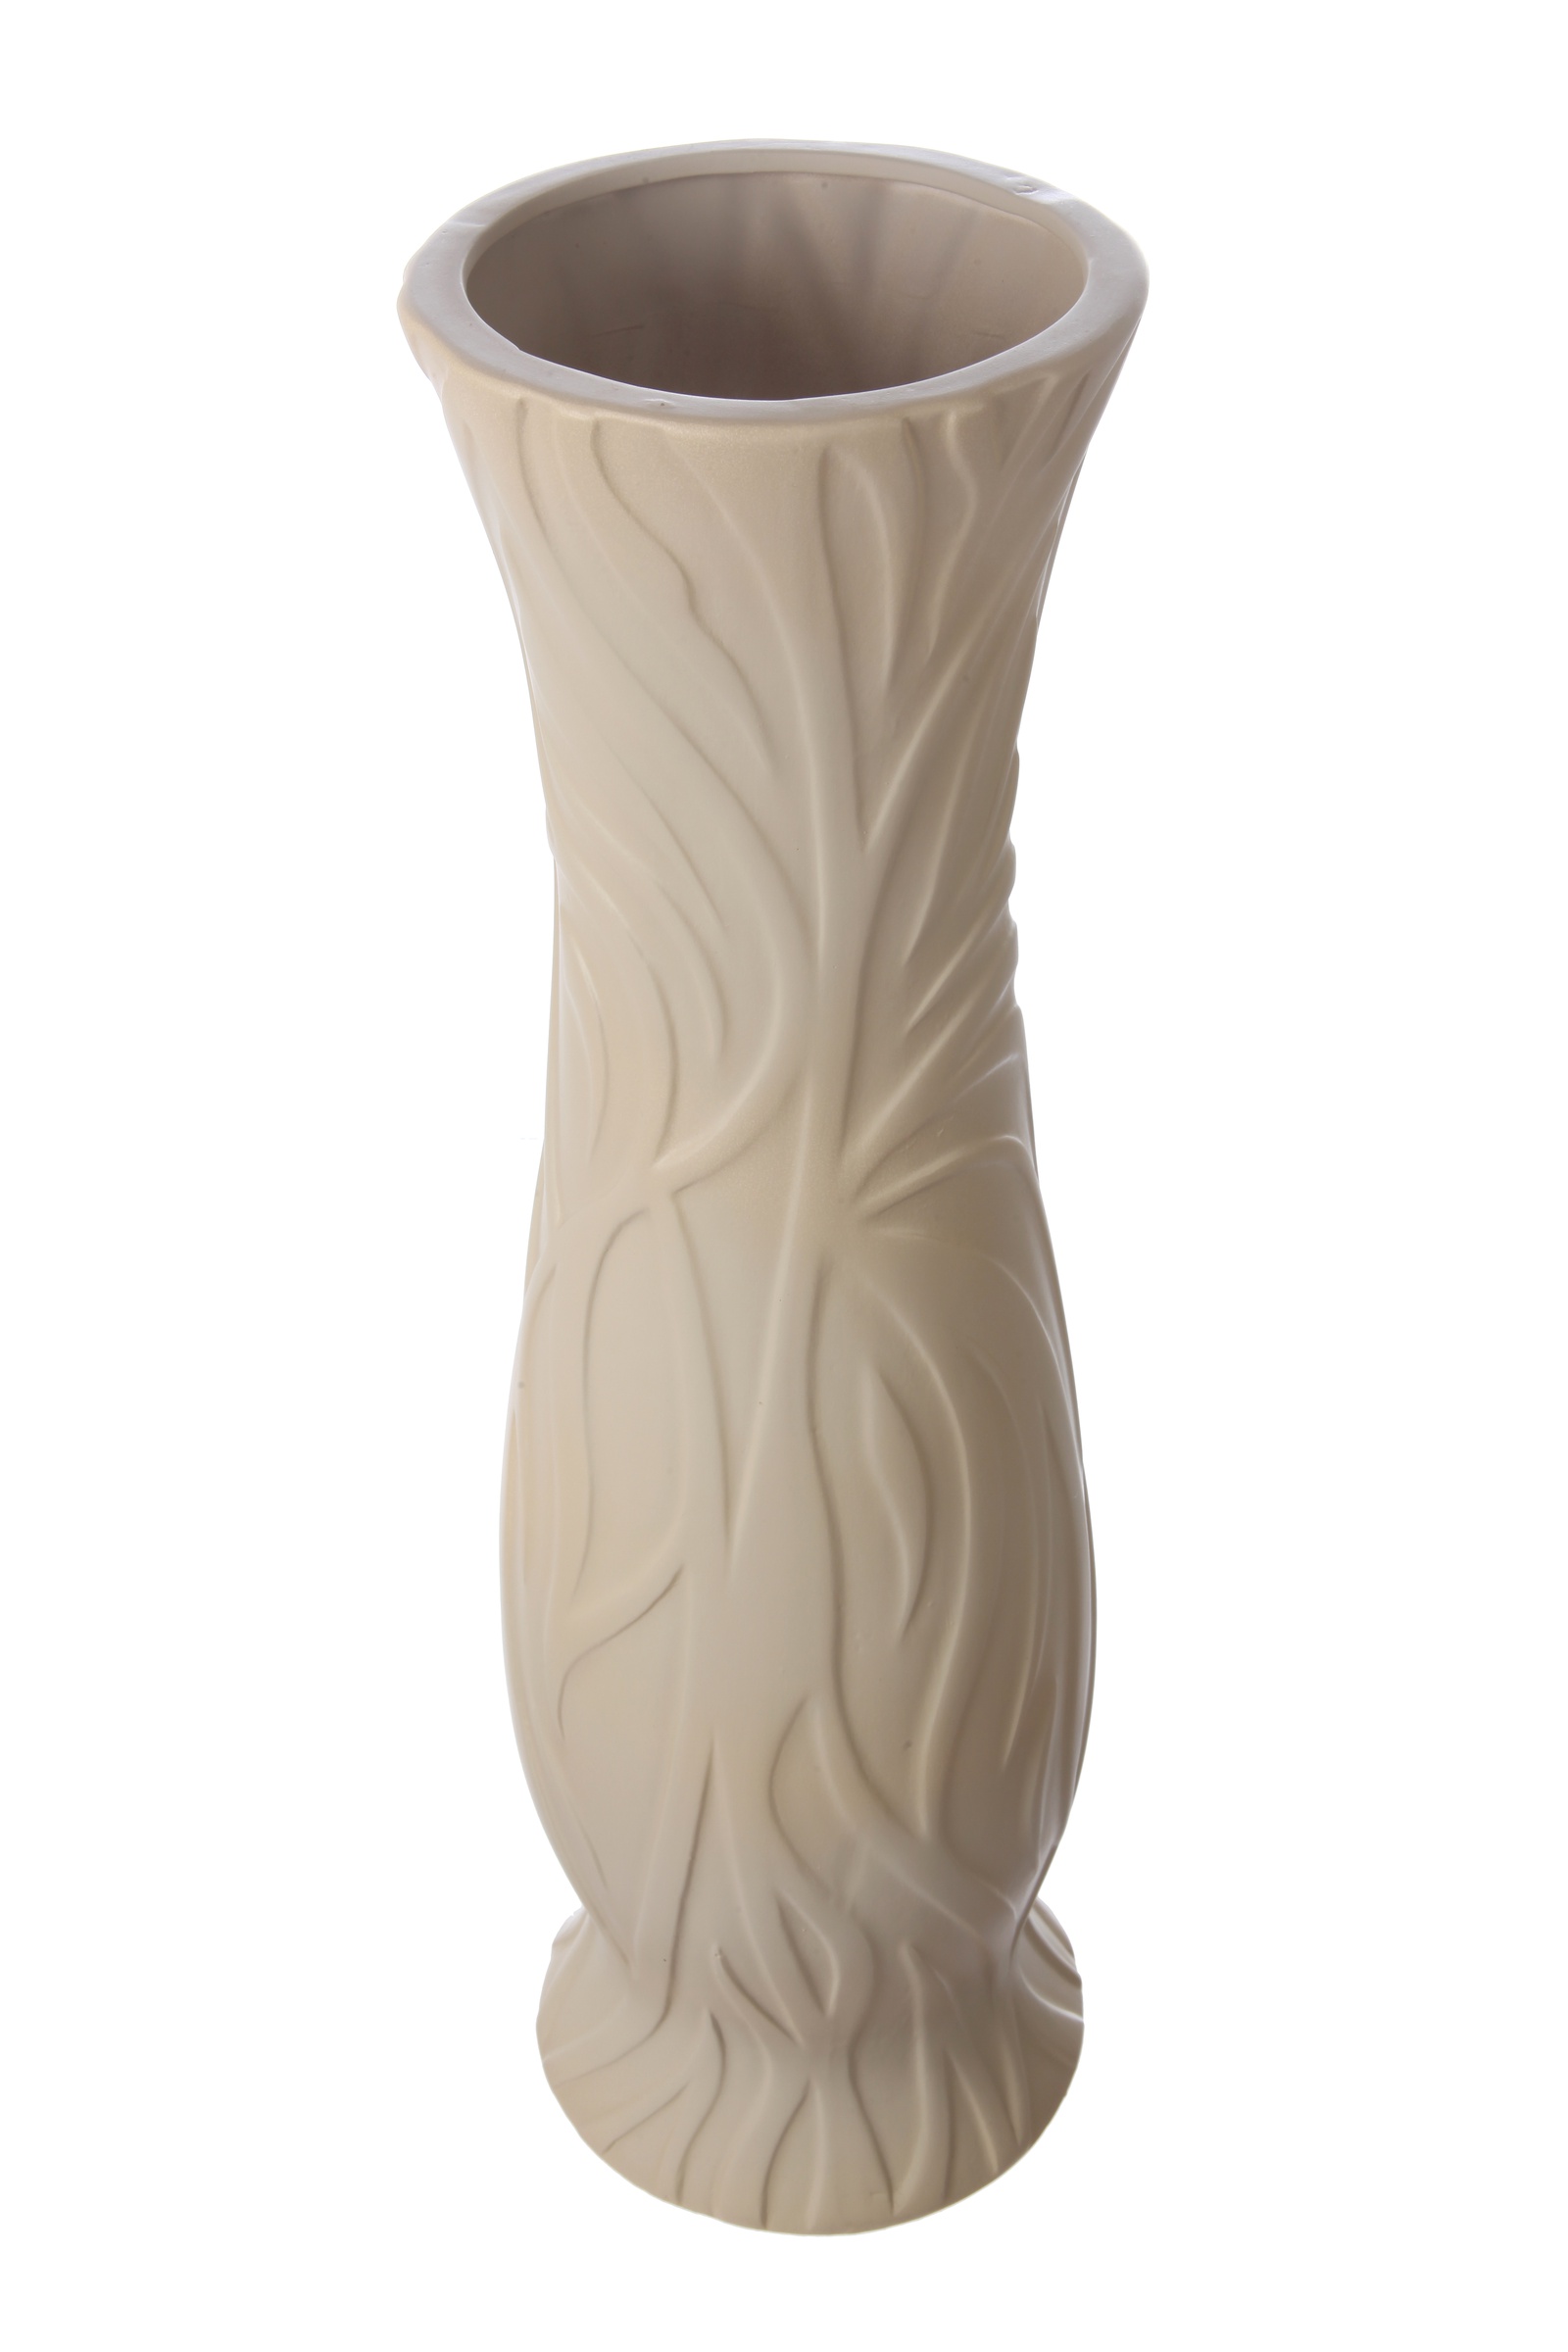 Ваза IsmatDecor Керамическая ваза, VB-92 бежевый, бежевый